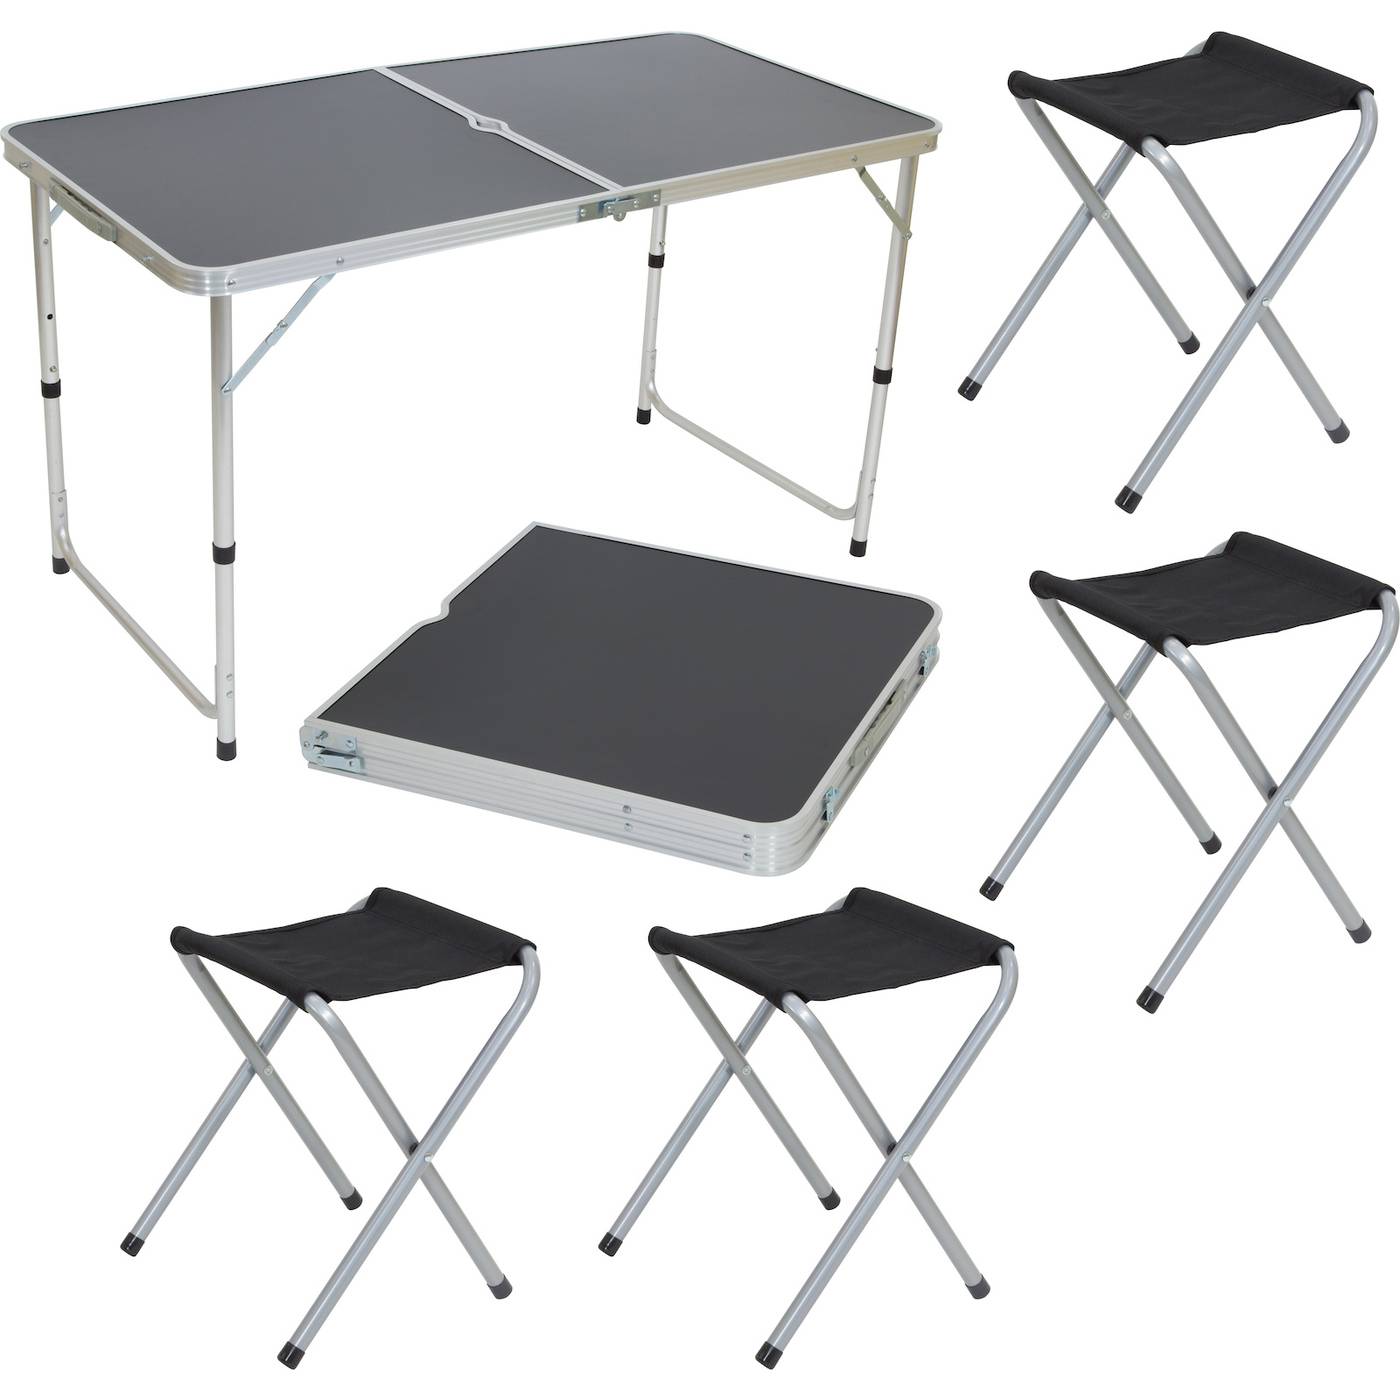 Походный столик купить. Экос cho-150-e комплект "пикник" (стол и 4 стула ) черный (992992). Набор мебели Atemi ATS-400. Стол складной GH 404 Ecos. Комплект Ecos пикник cho-150-e.